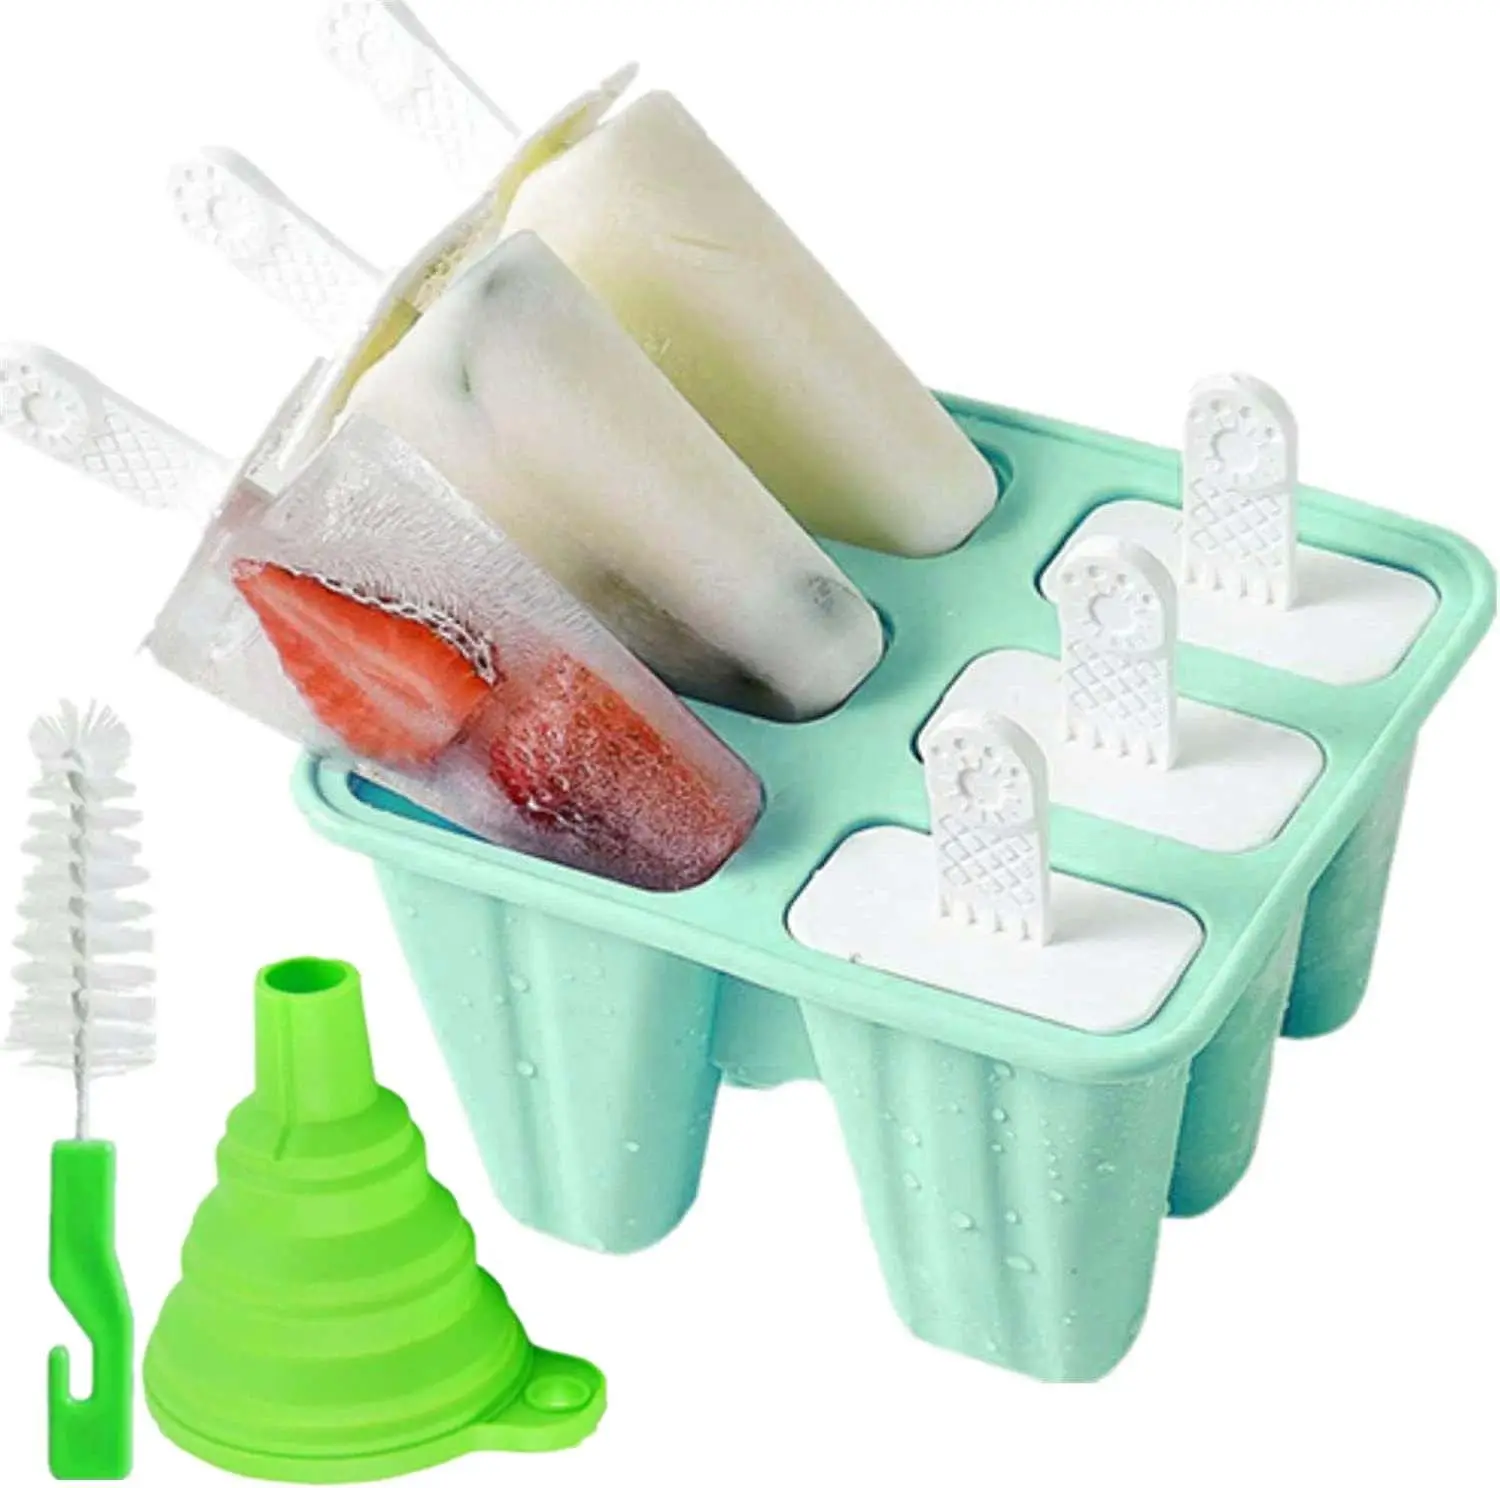 תבניות ארטיקים מסיליקון מגש תבניות ארטיקים תוצרת בית ללא BPA תבניות קרח לילדים